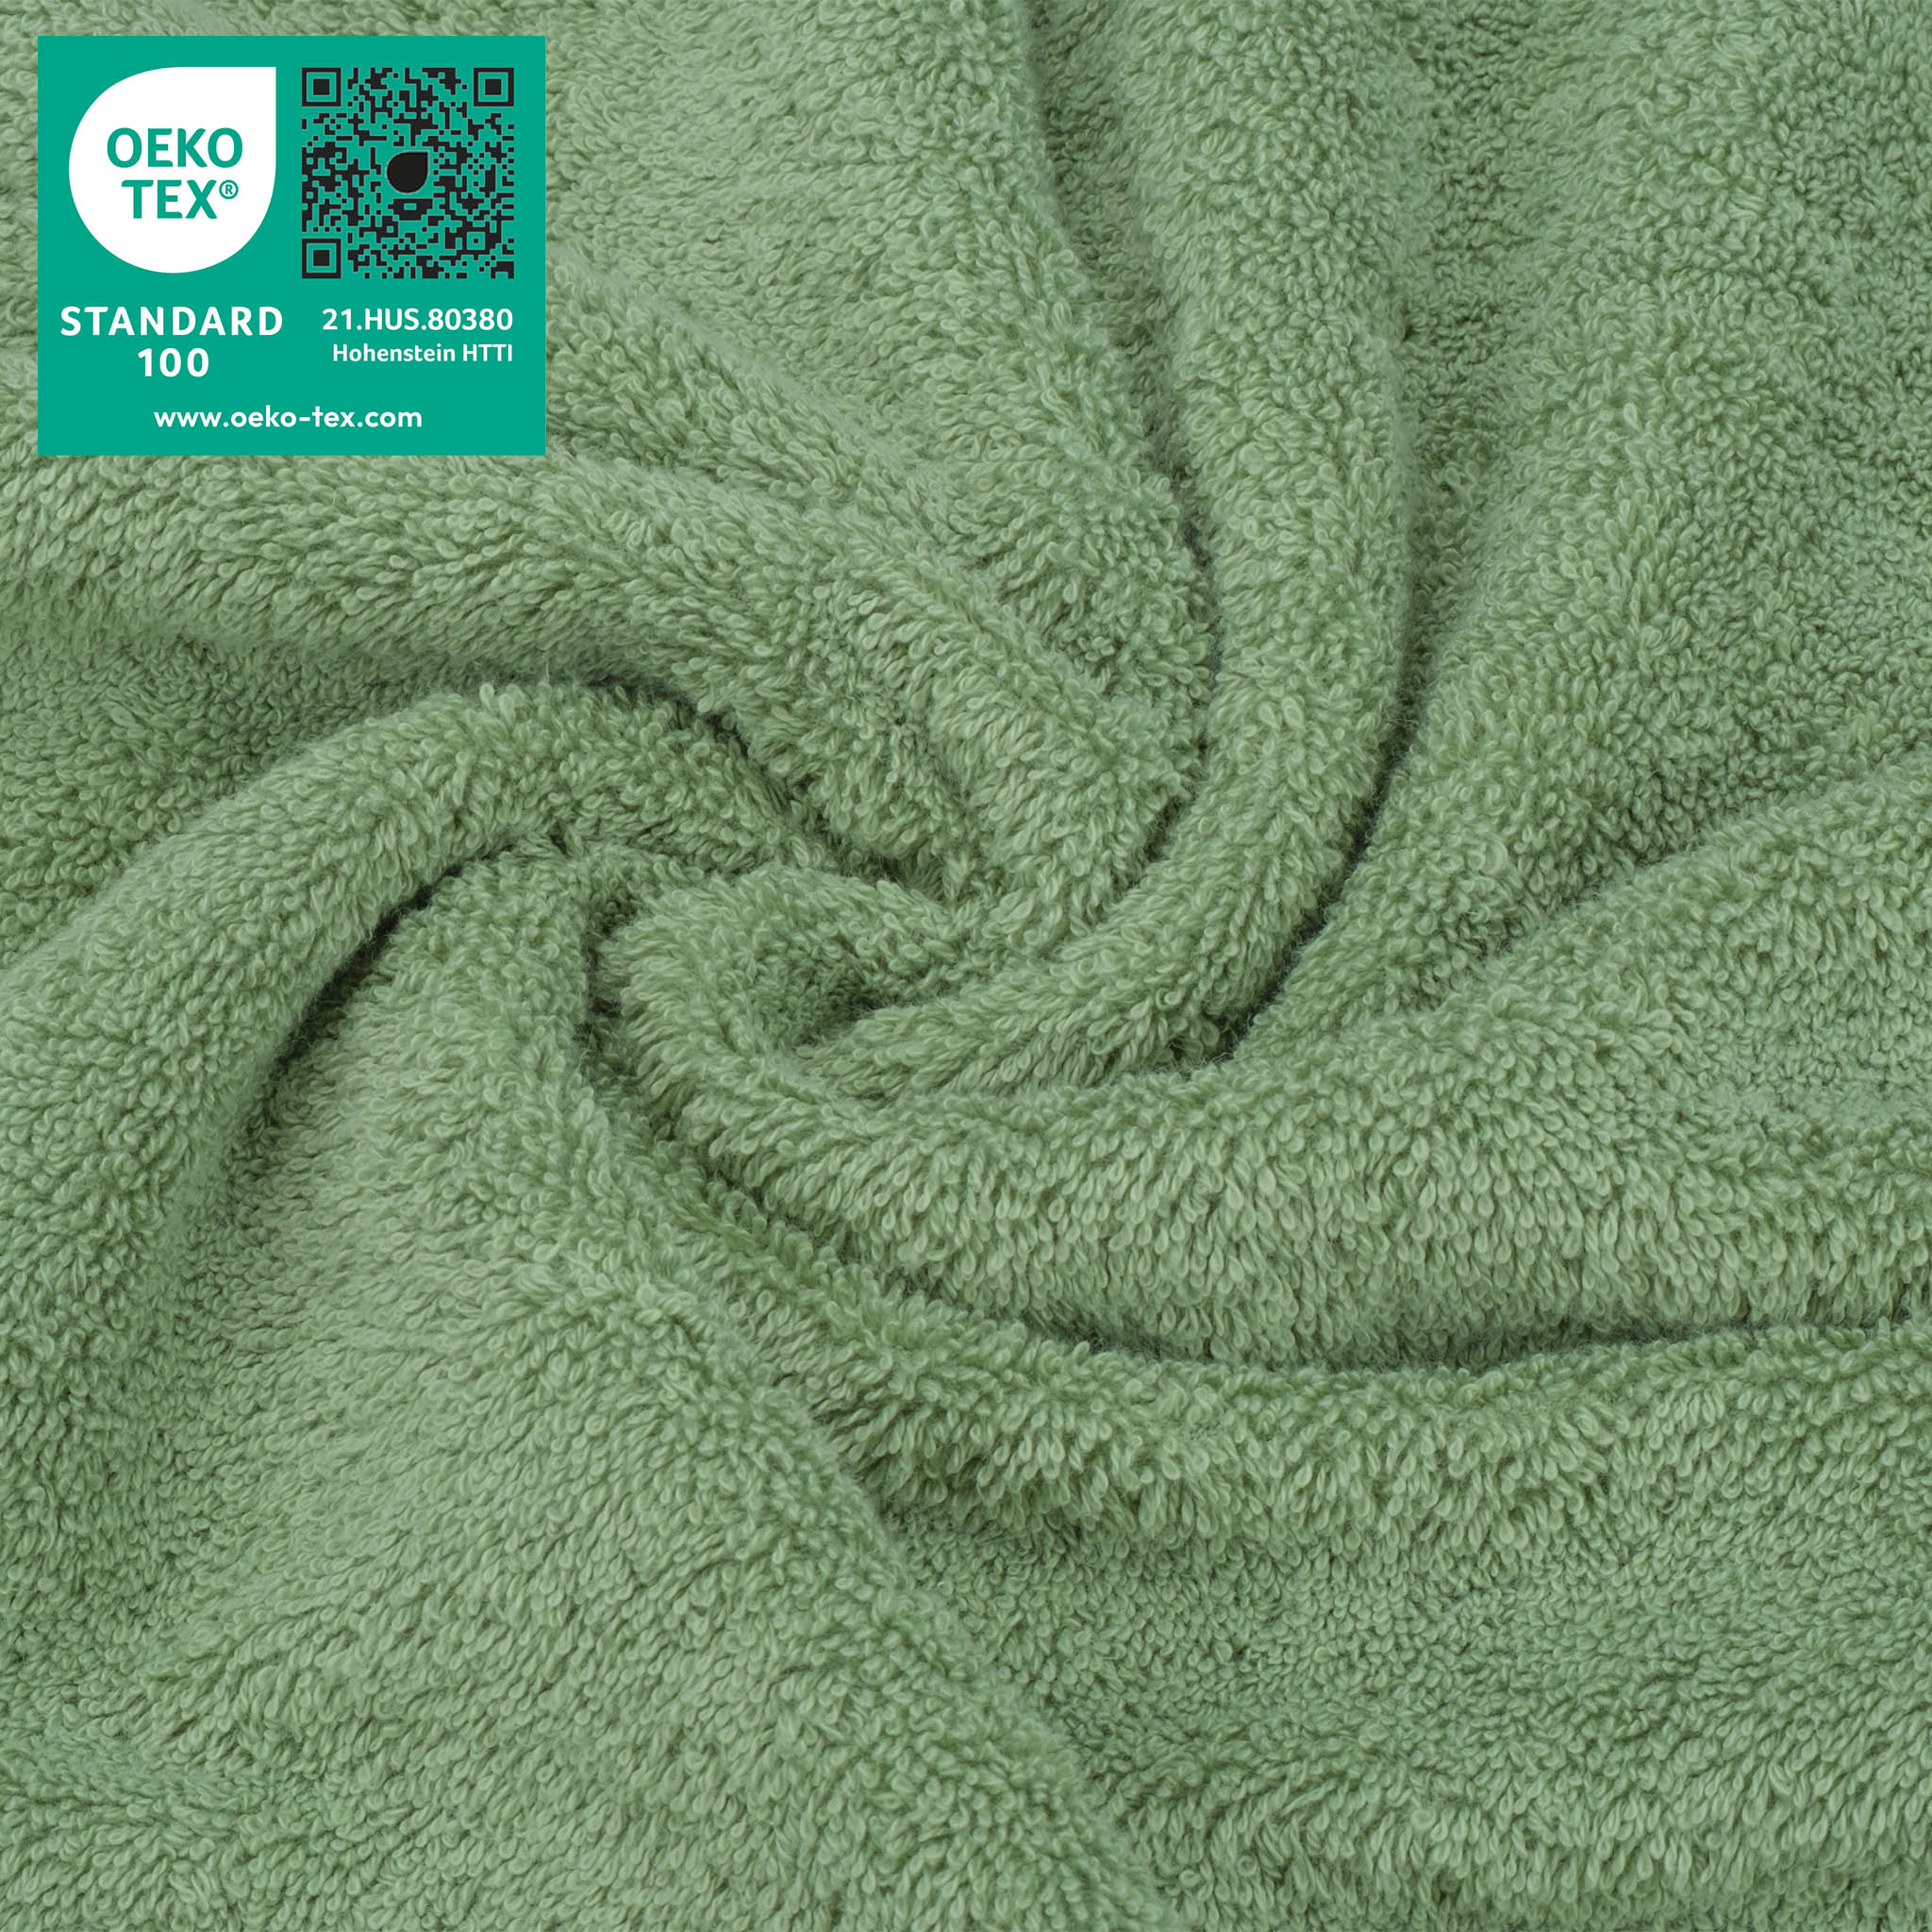  American Soft Linen 100% Turkish Cotton 4 Piece Washcloth Set - Wholesale - sage-green-3